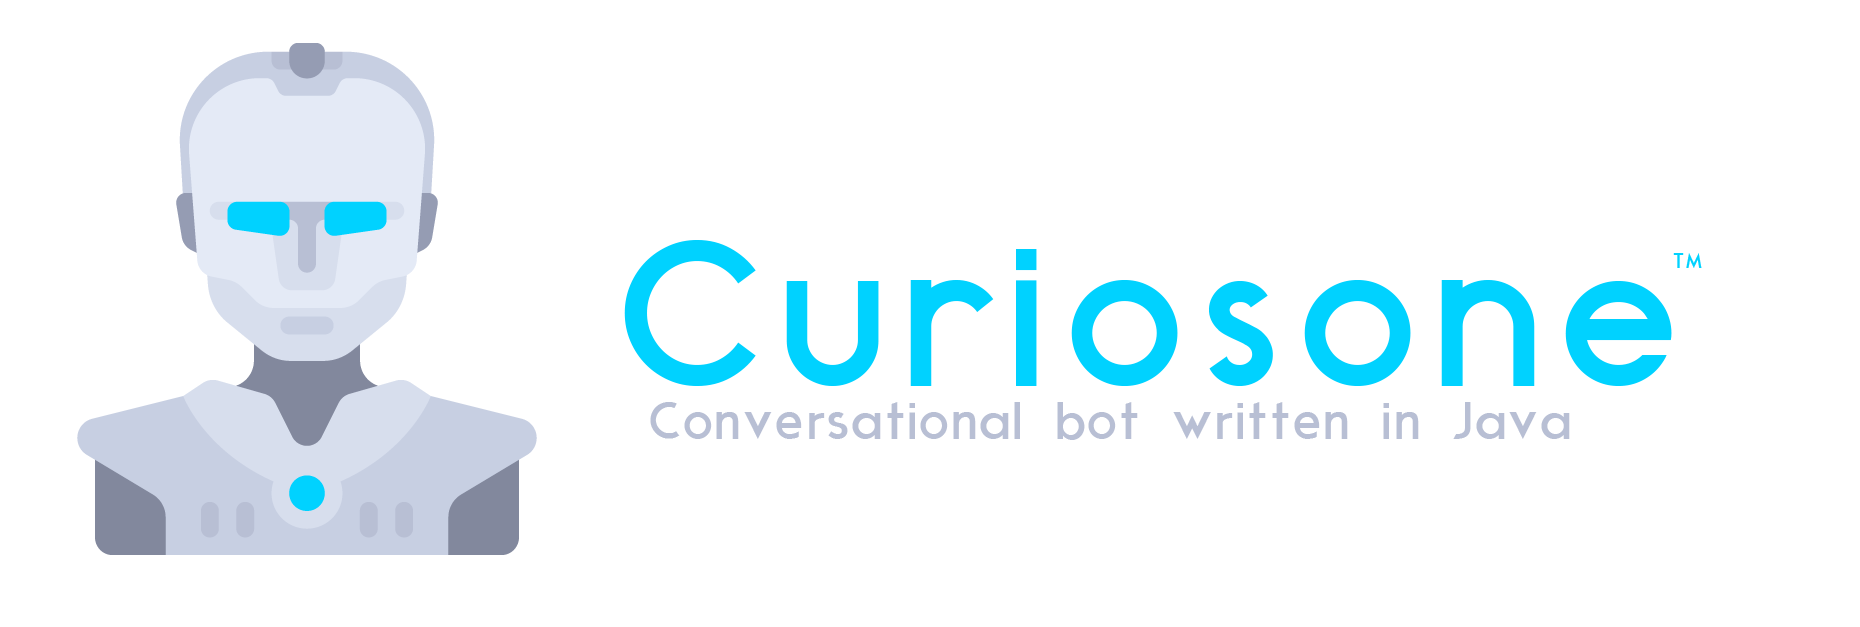 curiosone-bot